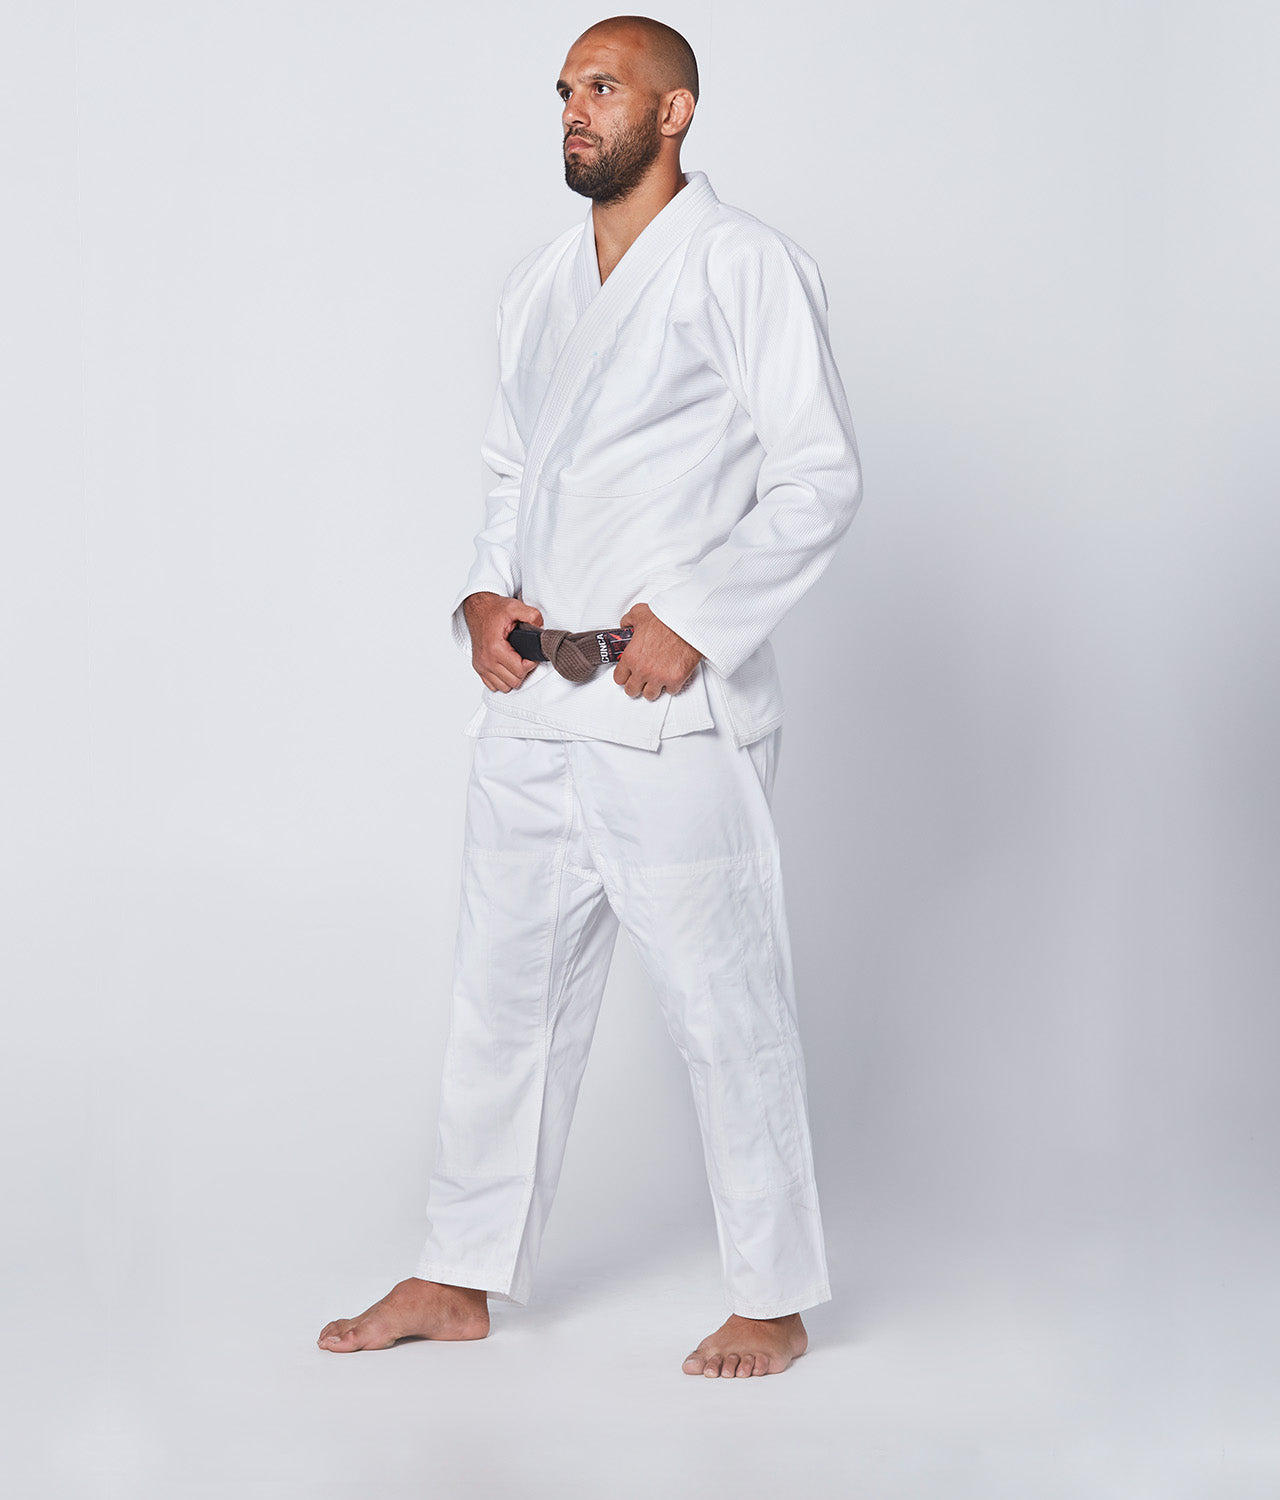 Elite Sports Men's Essential White Brazilian Jiu Jitsu BJJ Gi Side View